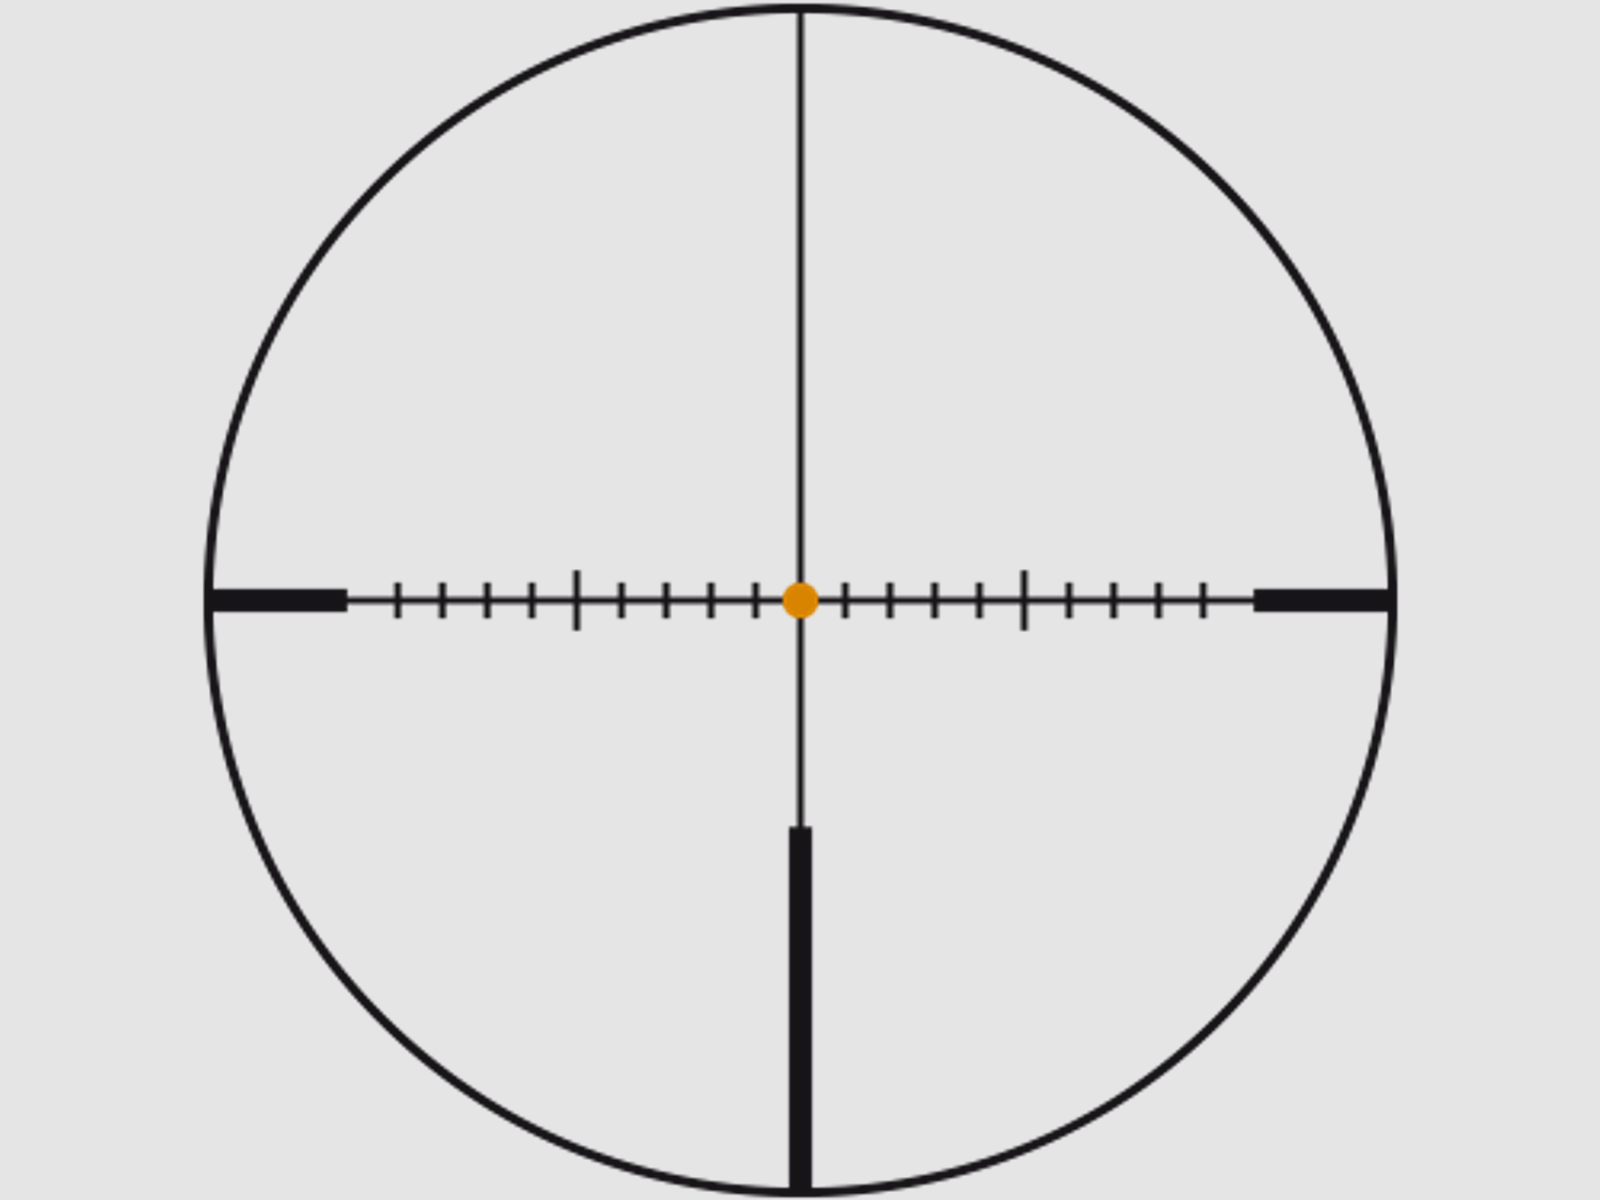 SWAROVSKI Zielfernrohr mit Leuchtabsehen 2-16x50 P Z8i SR Abs. 4A-I/4A-300I/BRX-I/4W-I